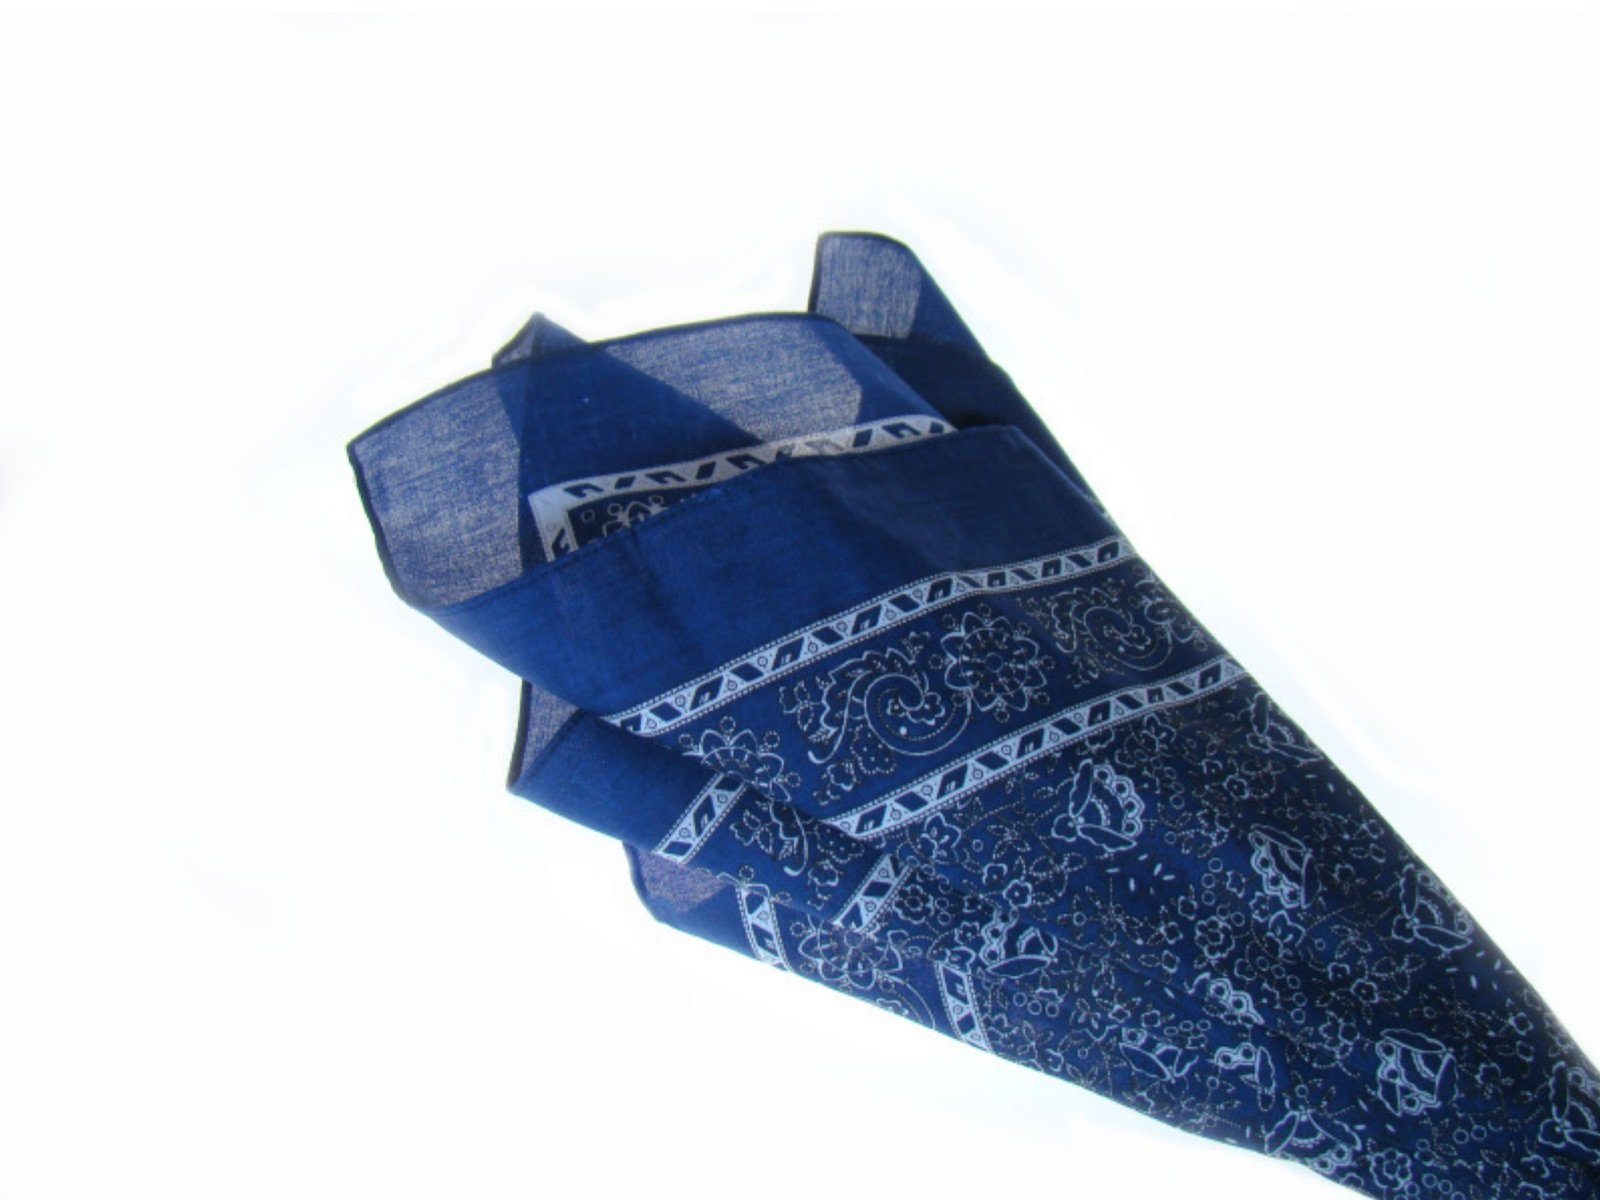 LK Trend & Style bleibt Design Kopftuch Venezian Bandana, Trend modische im Nickituch das Blau